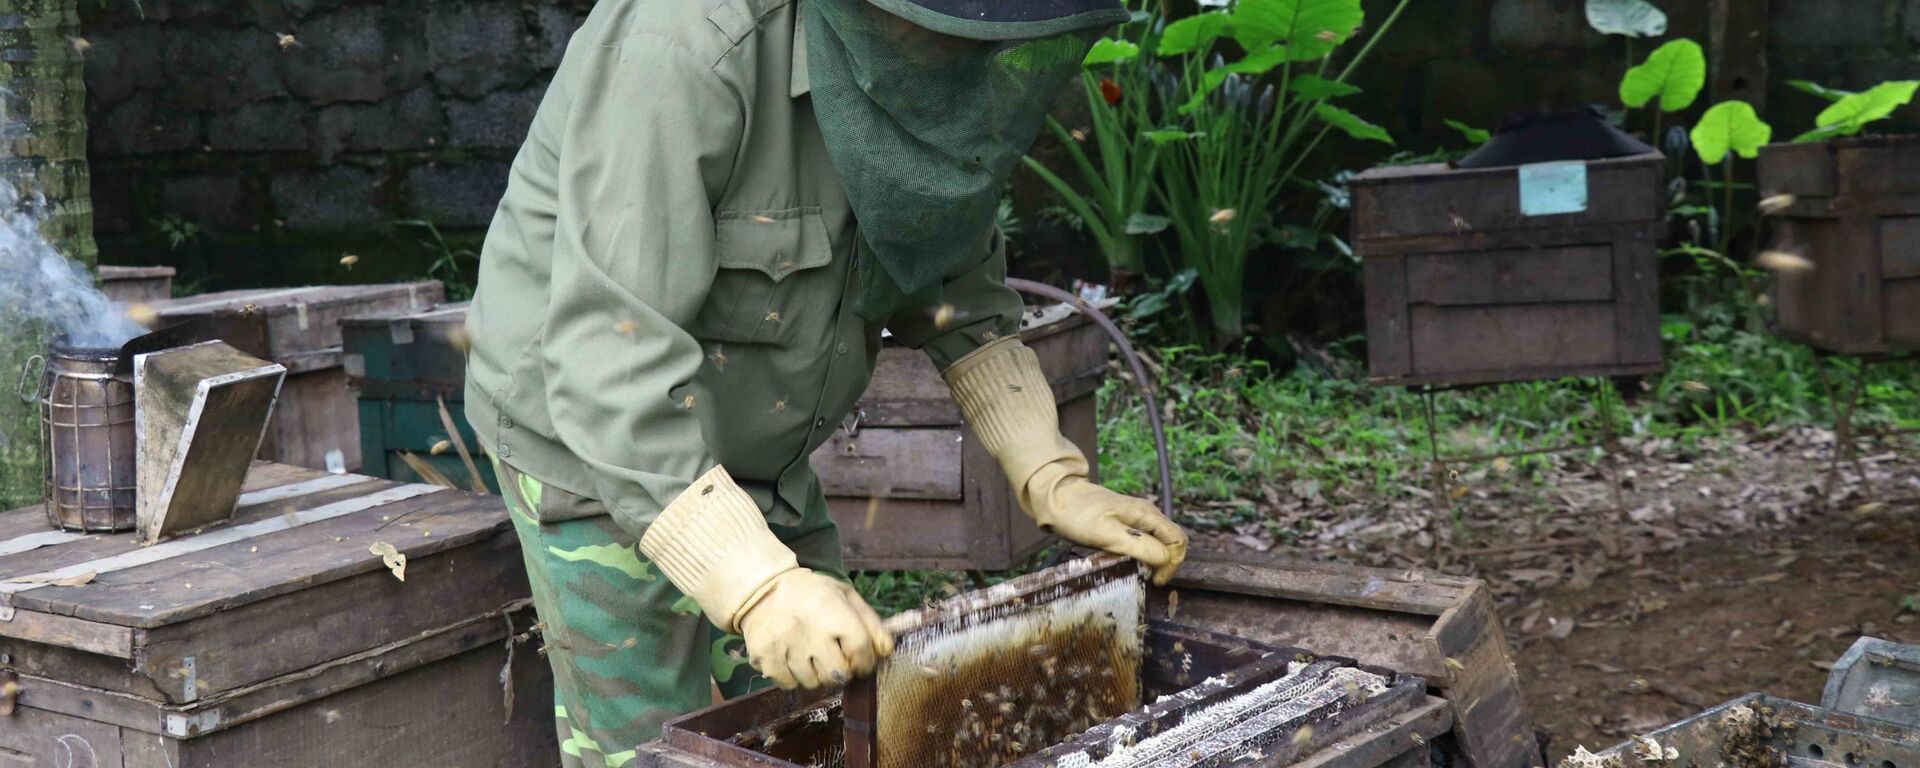 Người dân lấy cầu đựng ong ra khỏi thùng mang đi lấy mật. - Sputnik Việt Nam, 1920, 01.05.2021